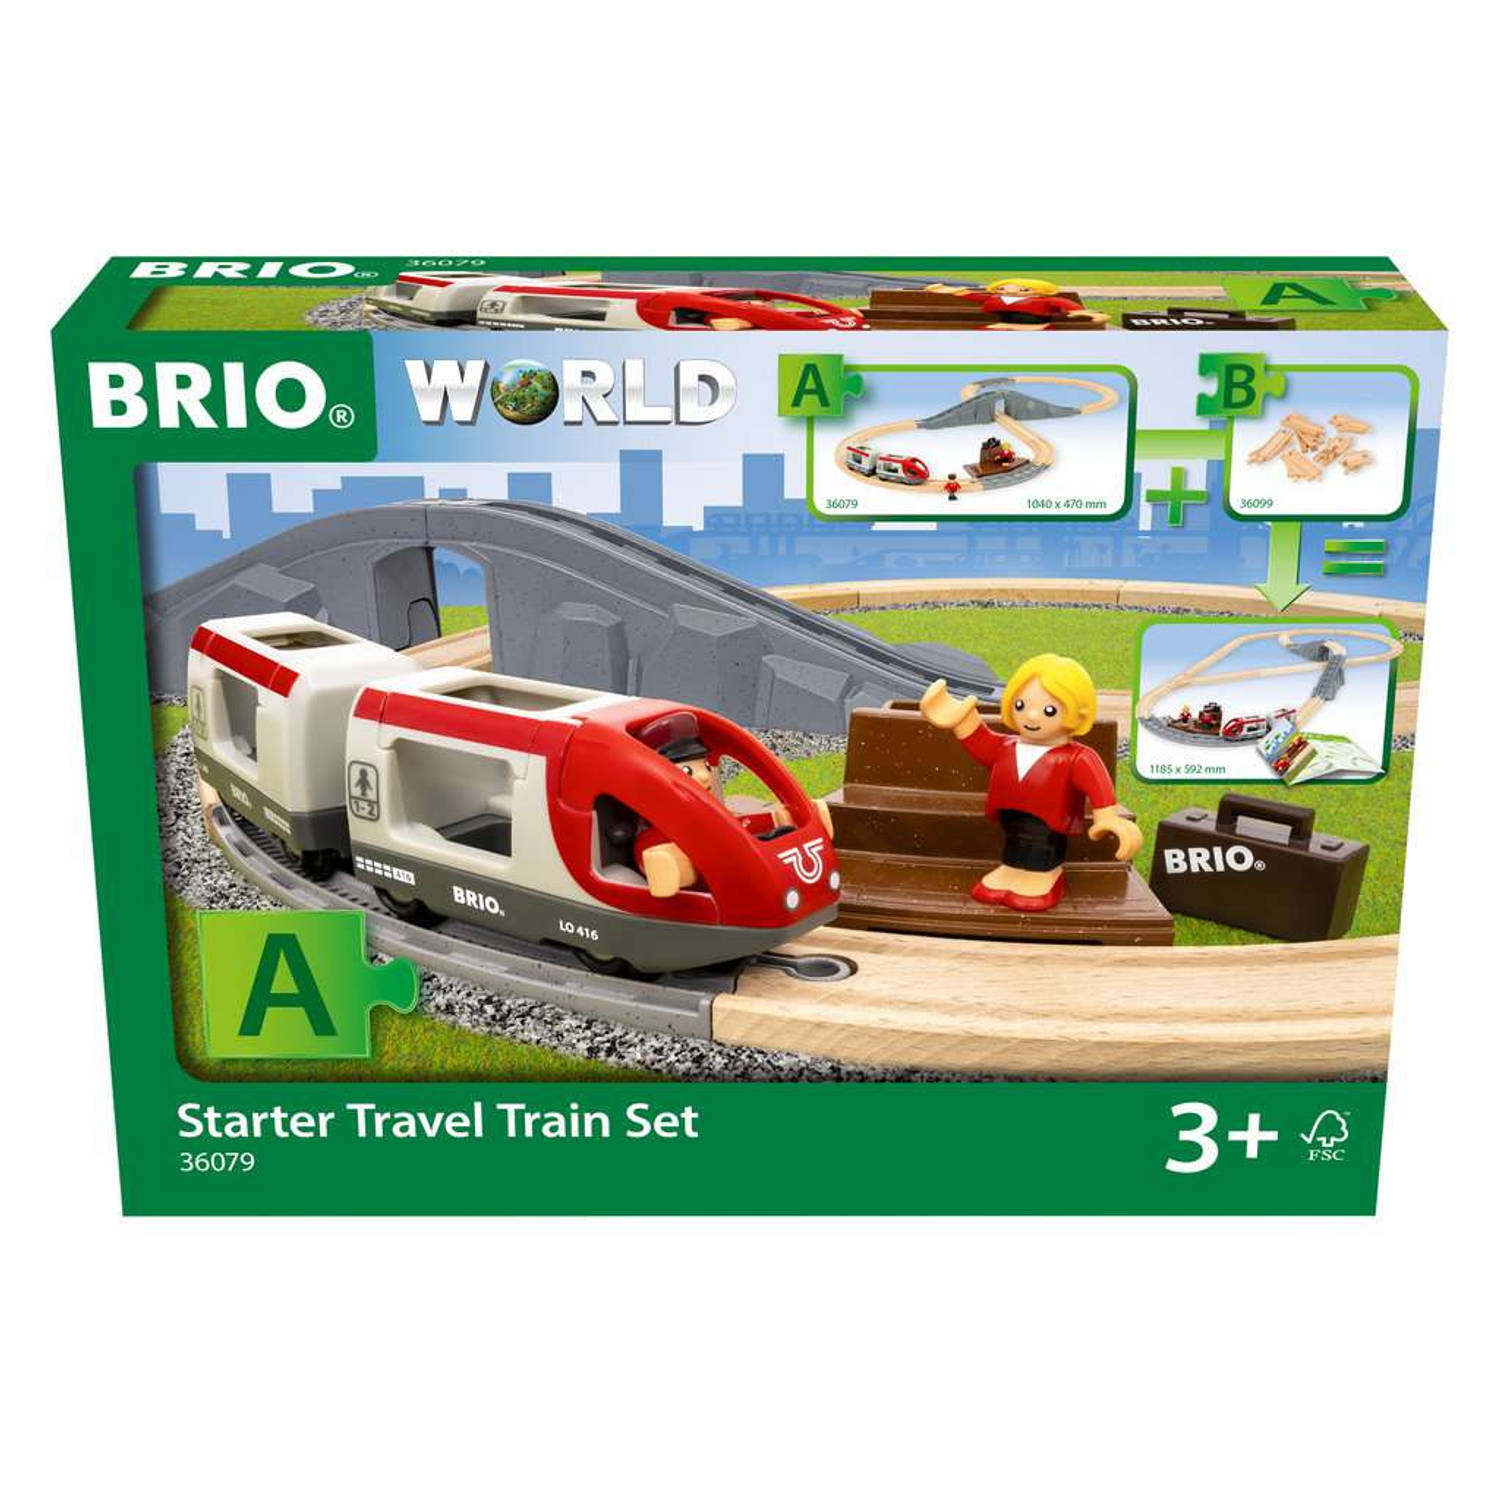 Brio World Starter Travel Train Set